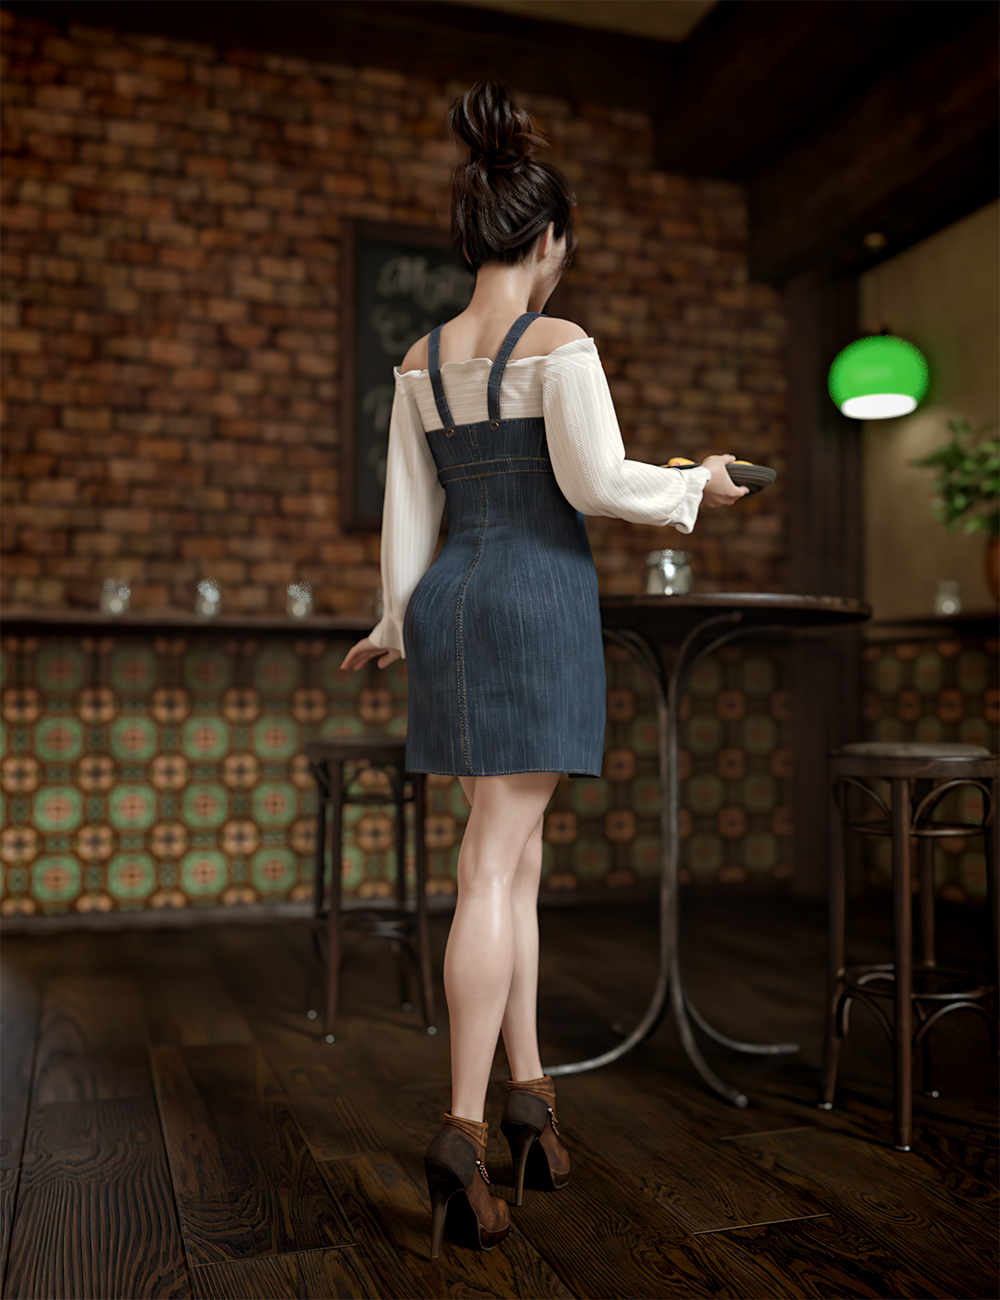 dForce Suspender Dress for Genesis 8 Females by: 3D-GHDesignBarbara BrundonSade, 3D Models by Daz 3D